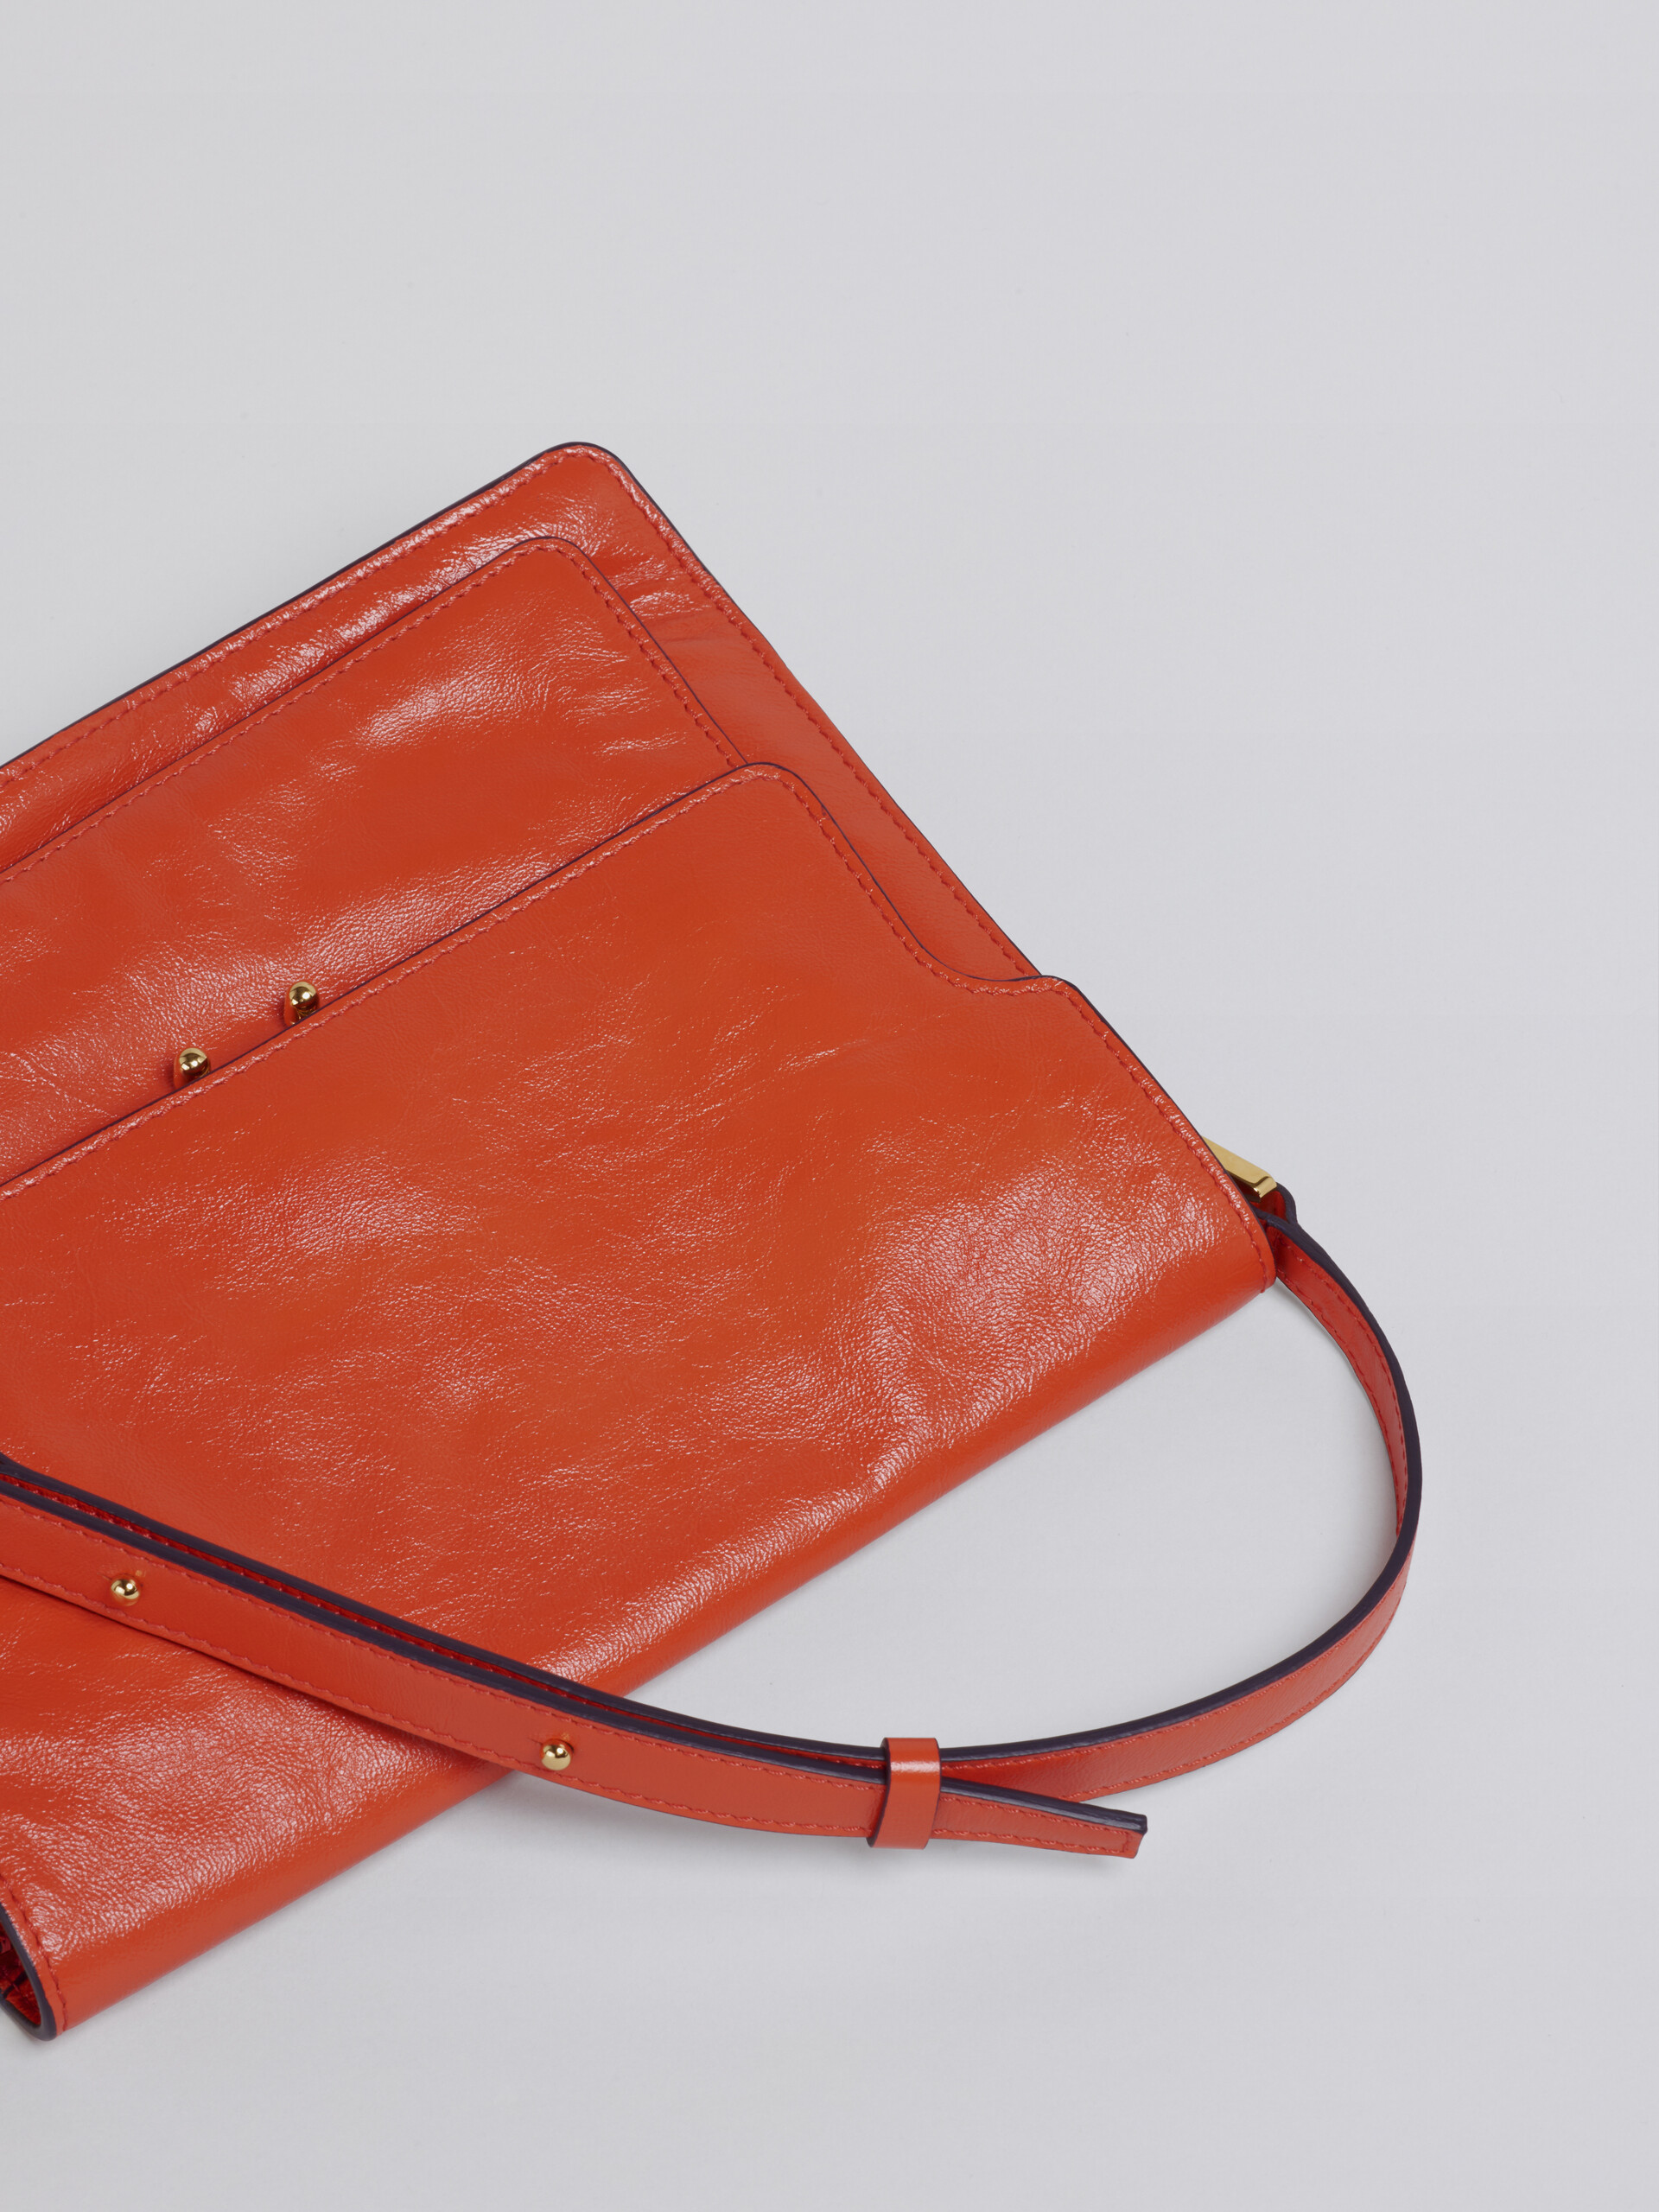 TRUNK SOFT large bag in orange leather - Shoulder Bags - Image 4